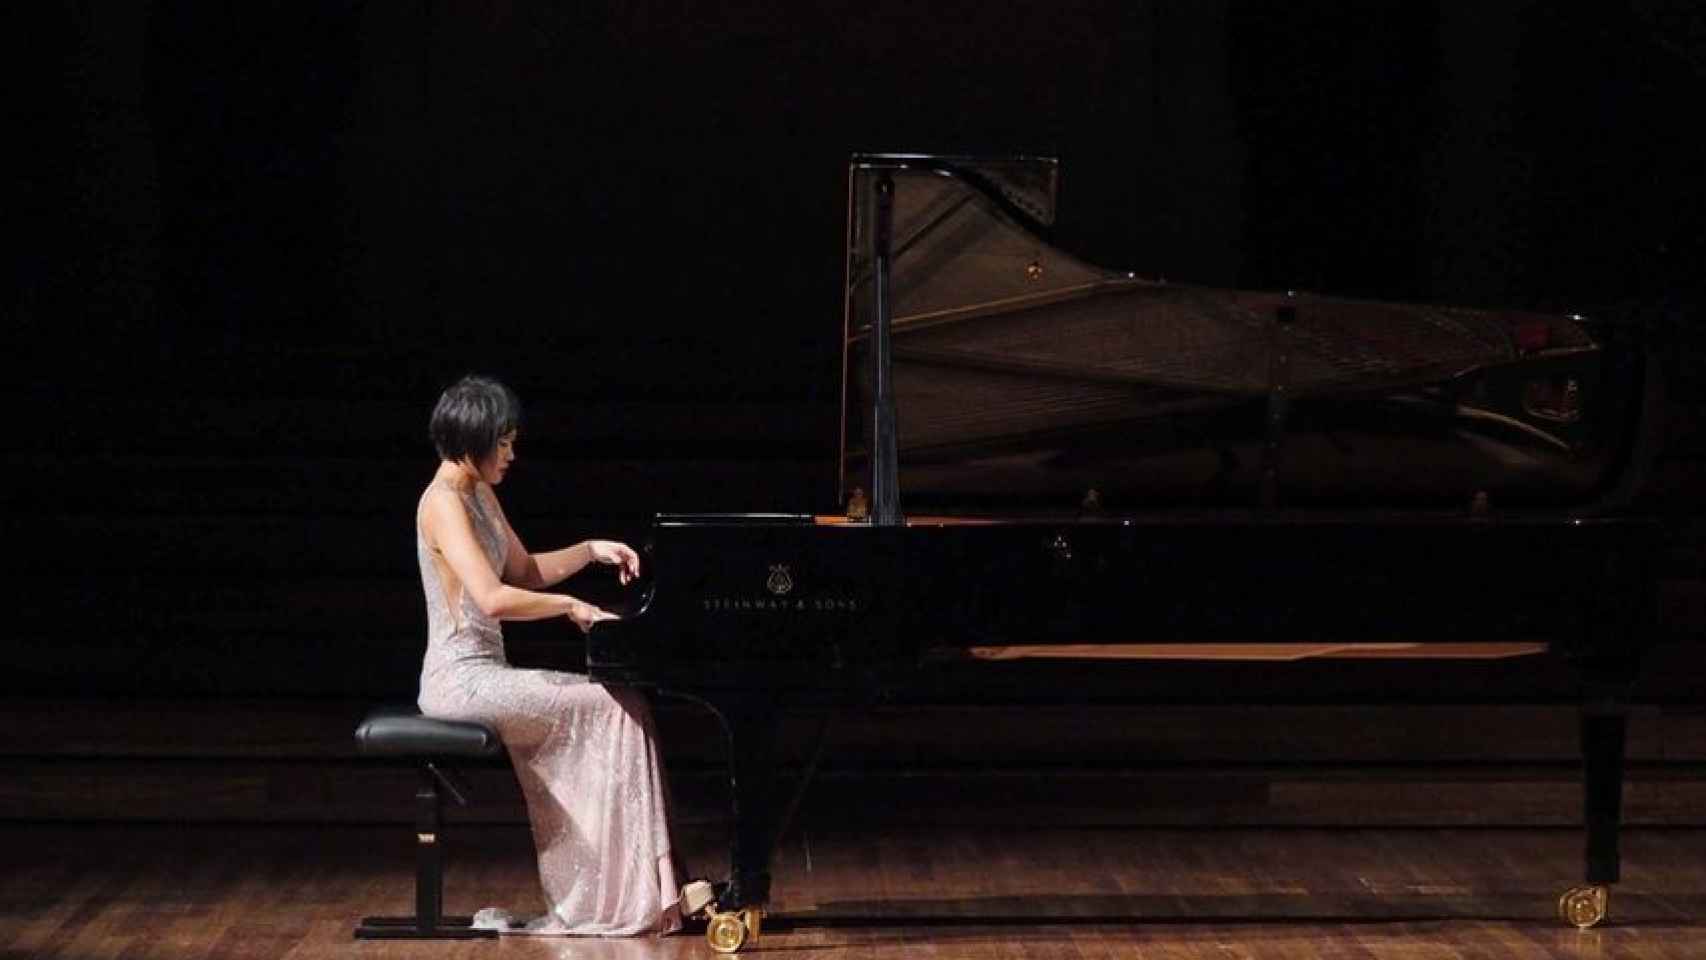 La pianista china Yuja Wang paró un concierto por el ruido.